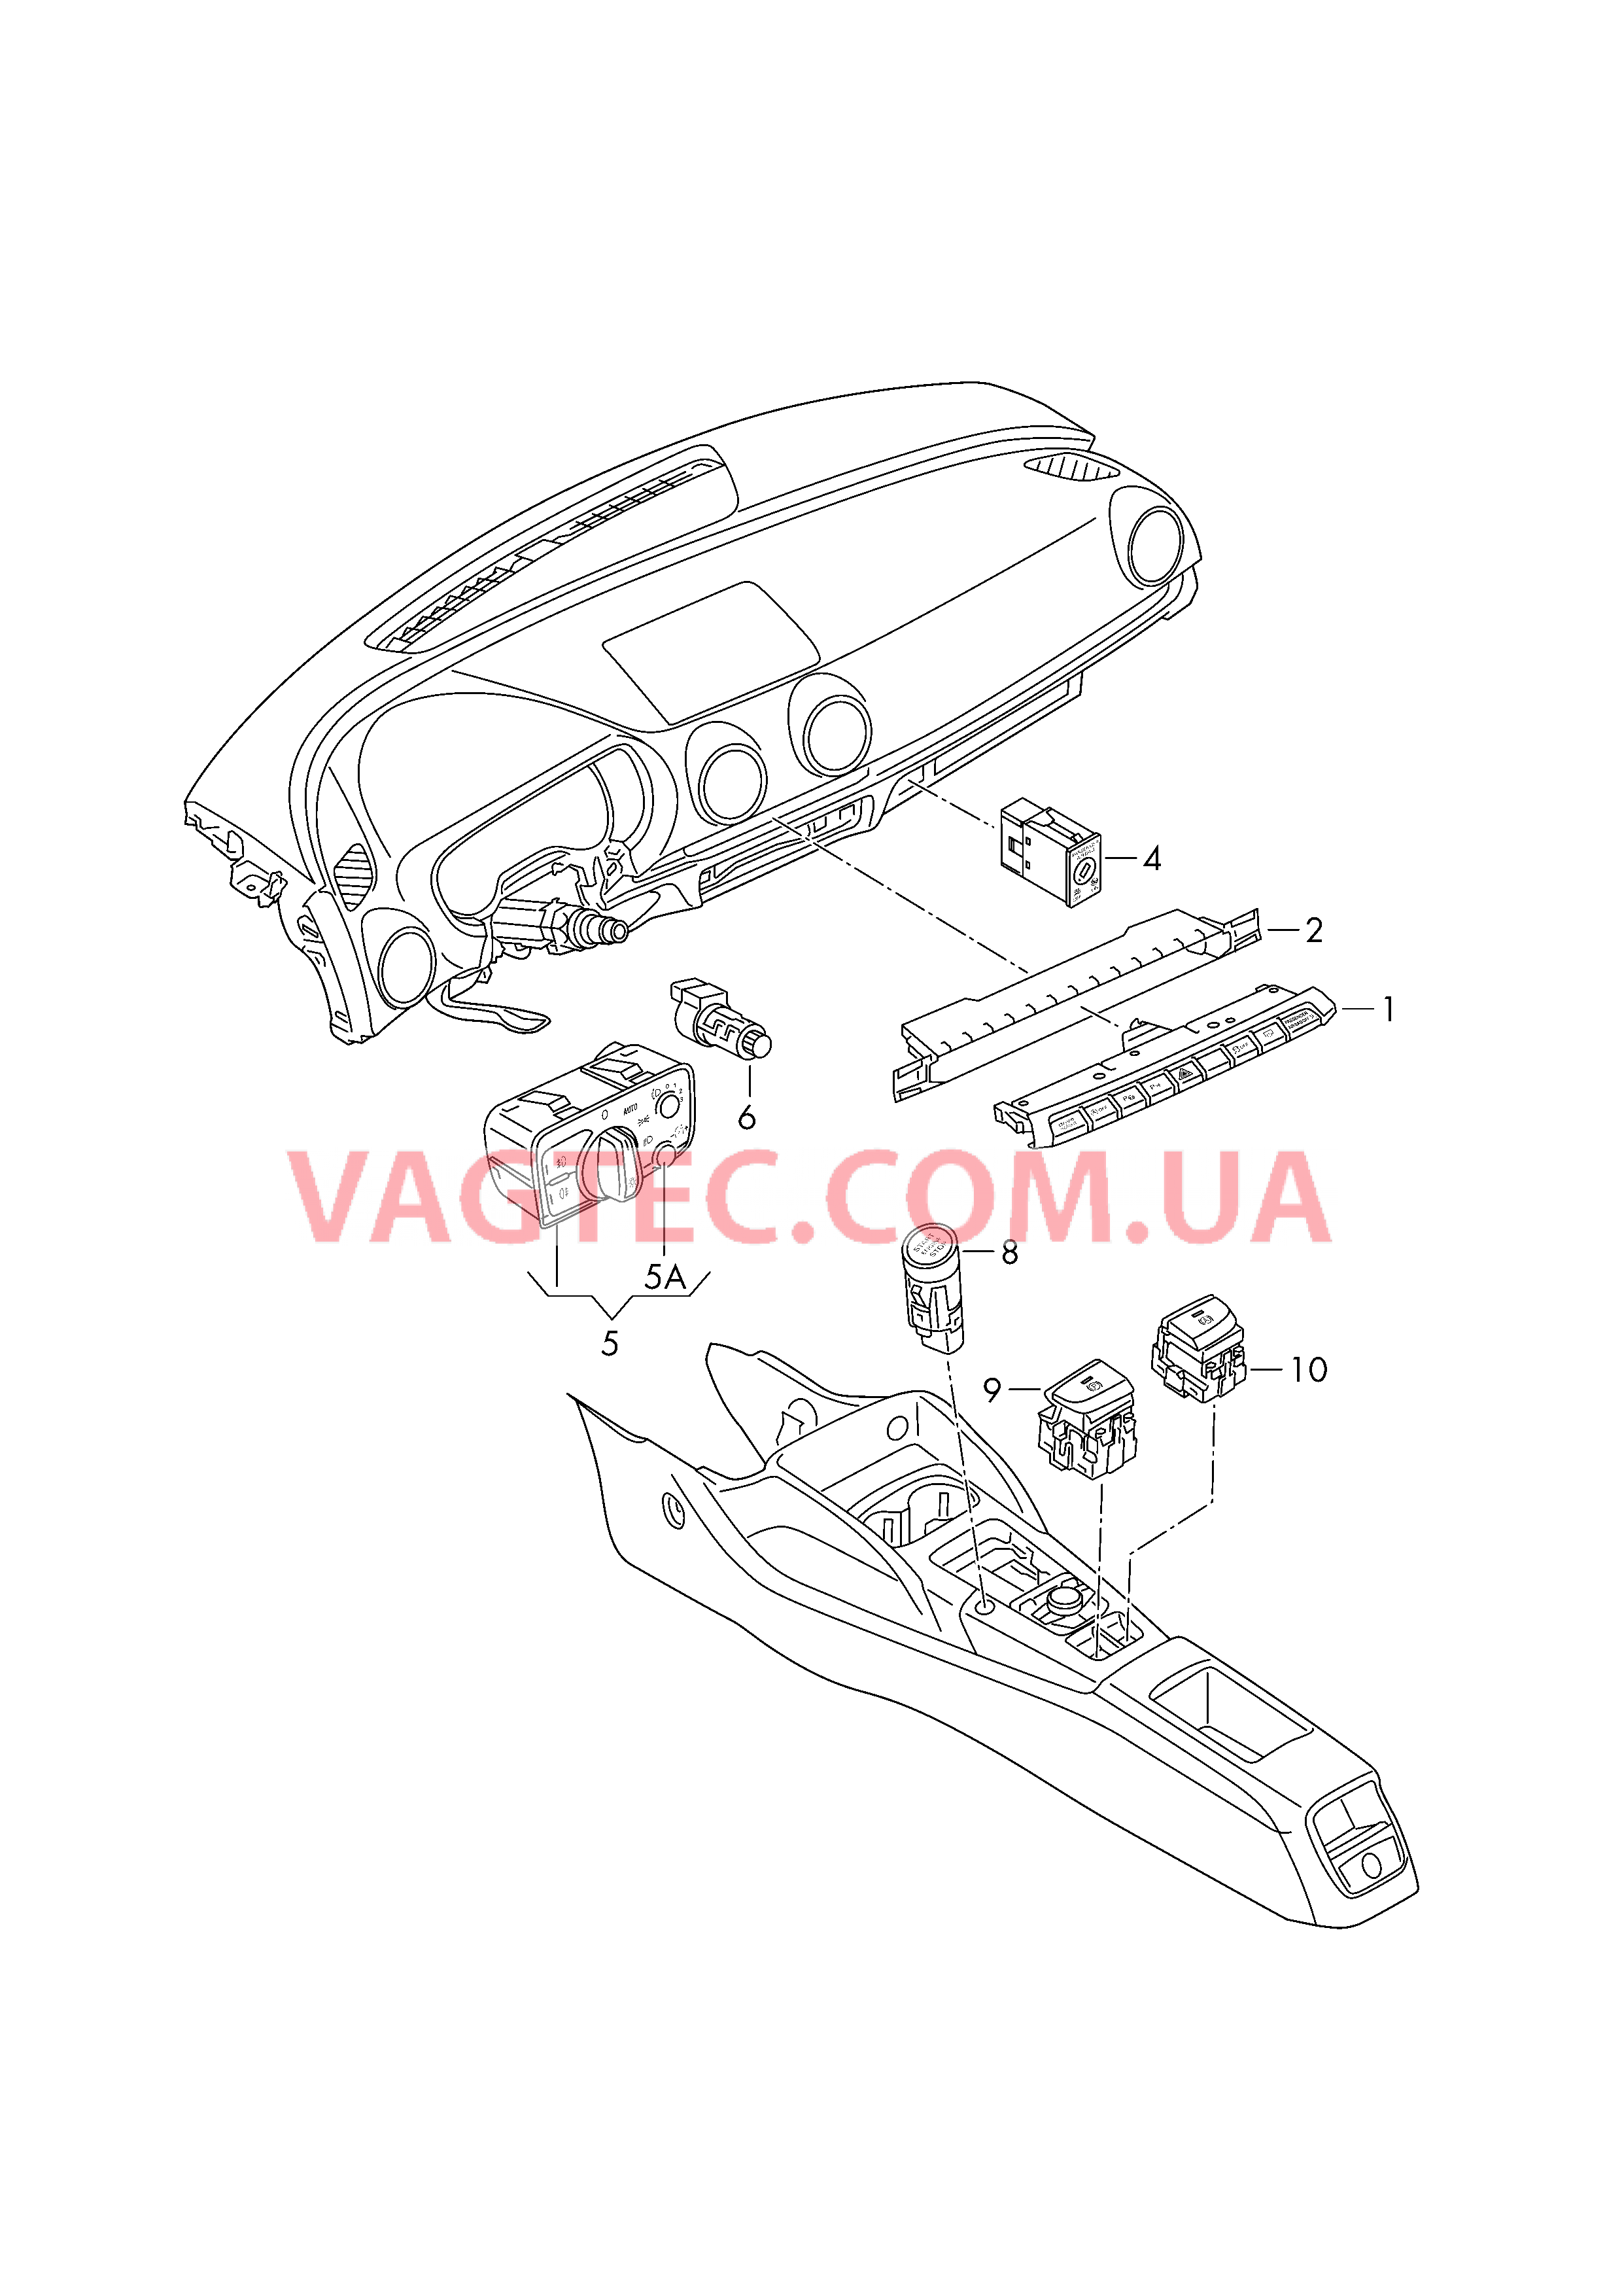 Выключатель в панели приборов Выключатель фар Выключатель в централ. консоли D - 26.05.2014>> для AUDI A3 2016